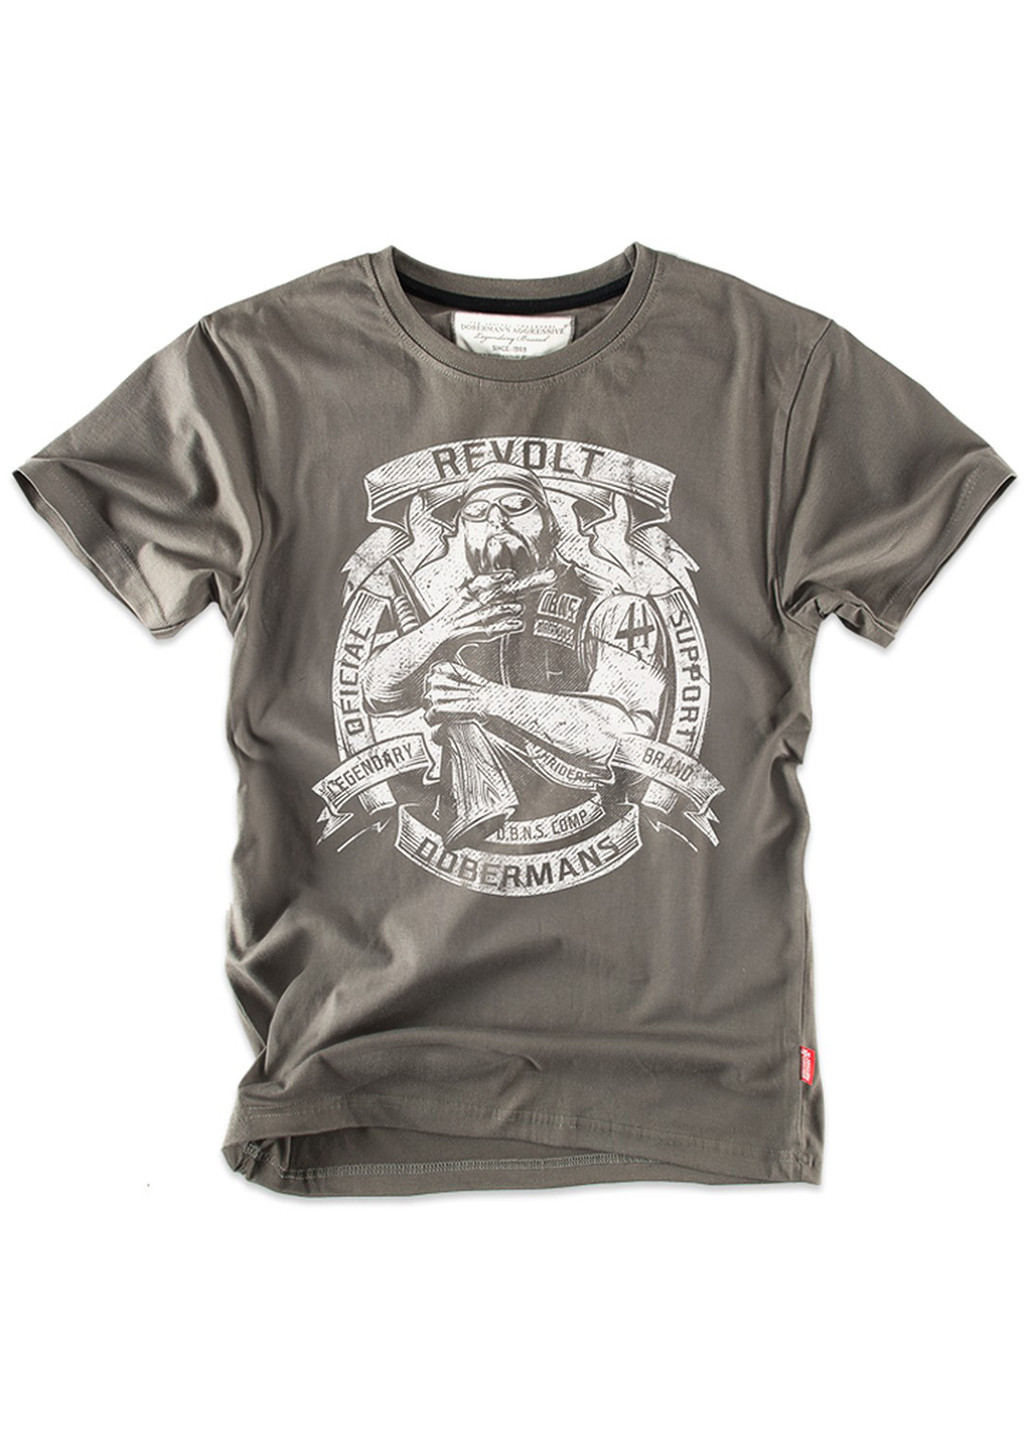 Хаки (оливковая) футболка dobermans revolt ts169kh Dobermans Aggressive